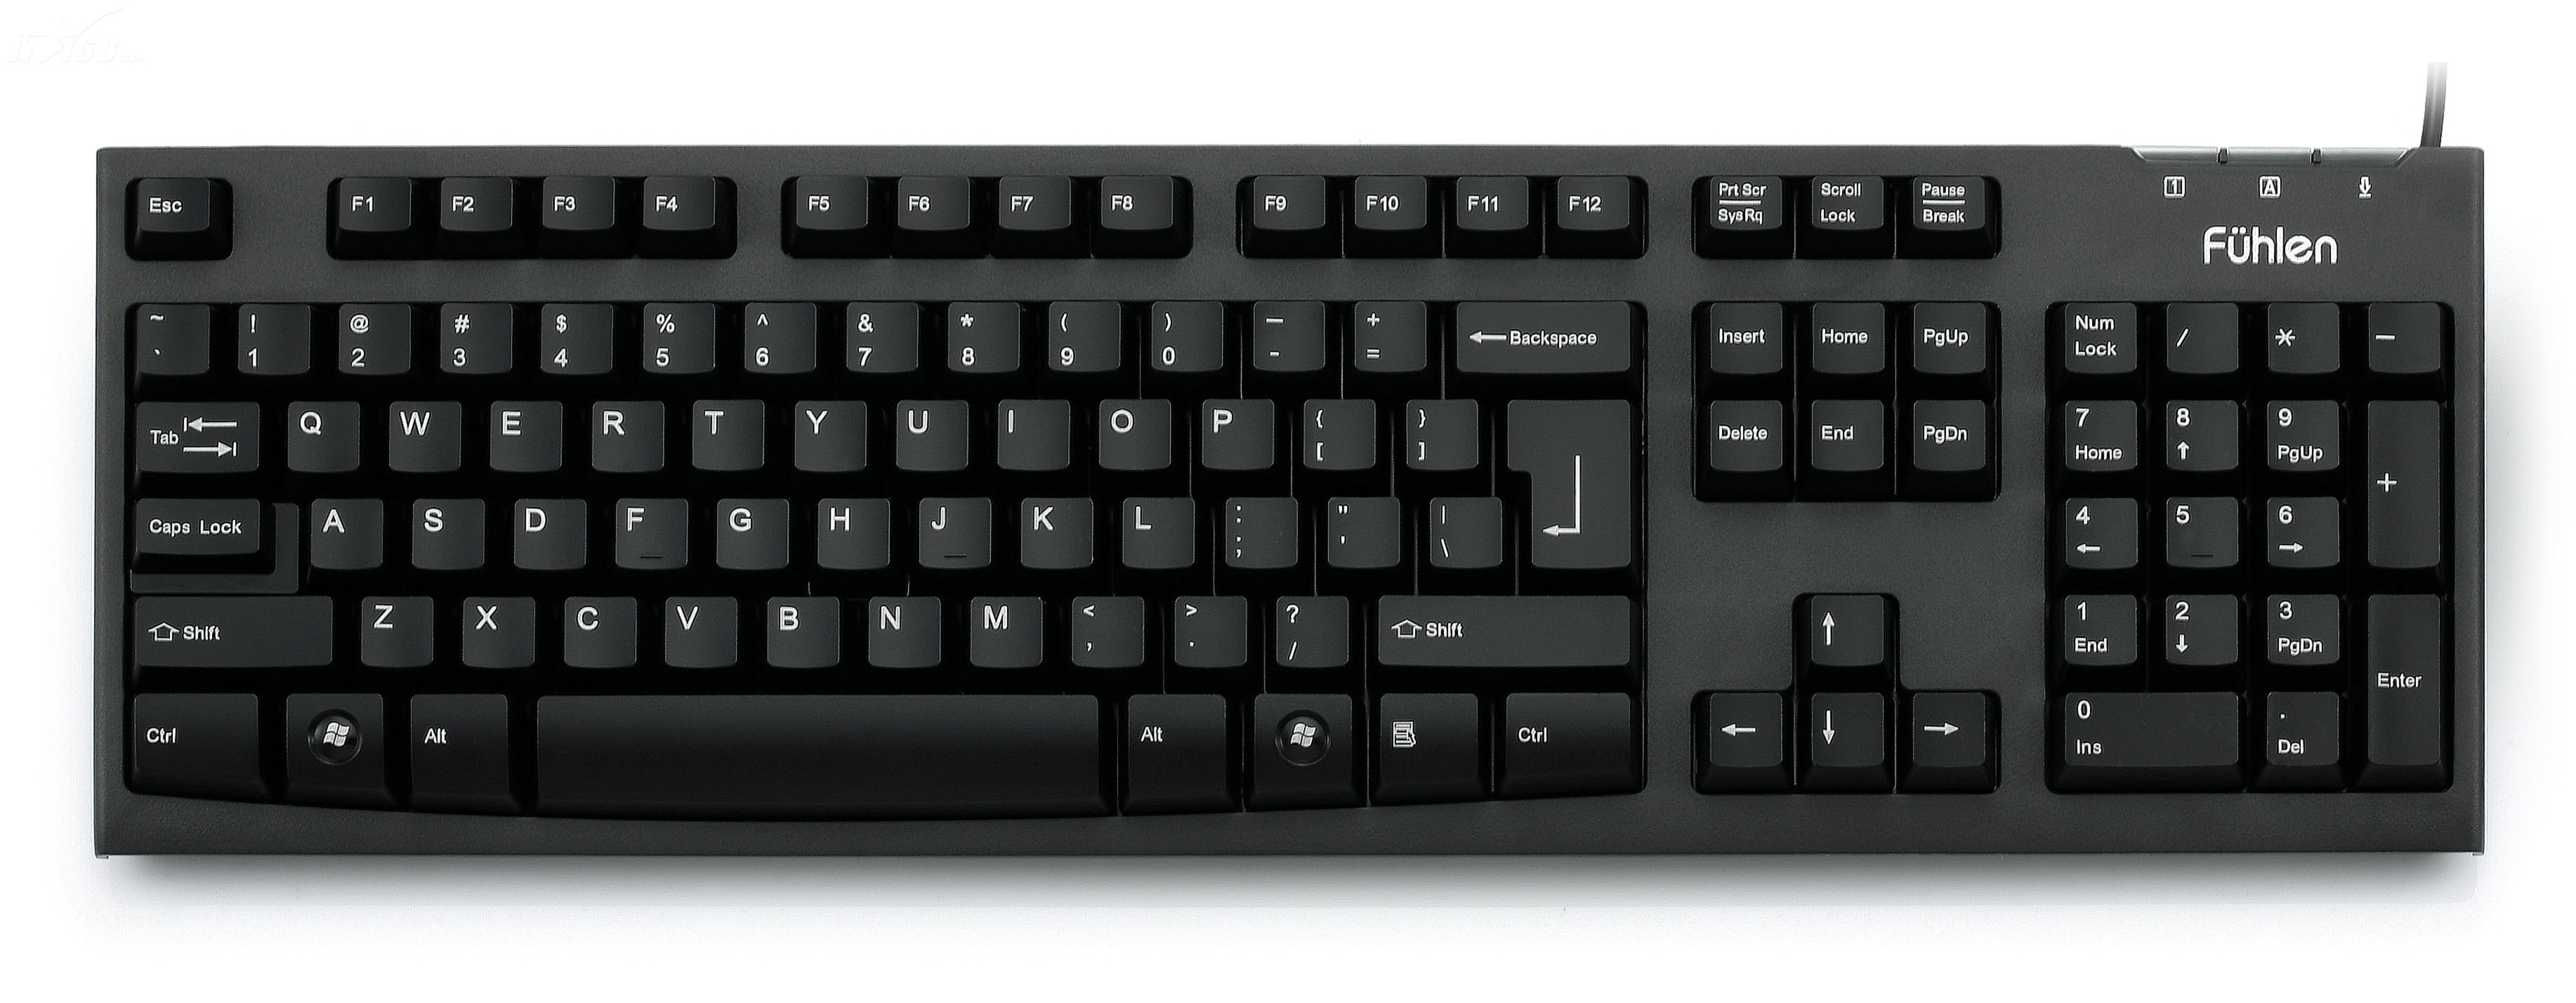 罗技g213键盘怎么样 薄膜键盘中的极品-电子发烧友网